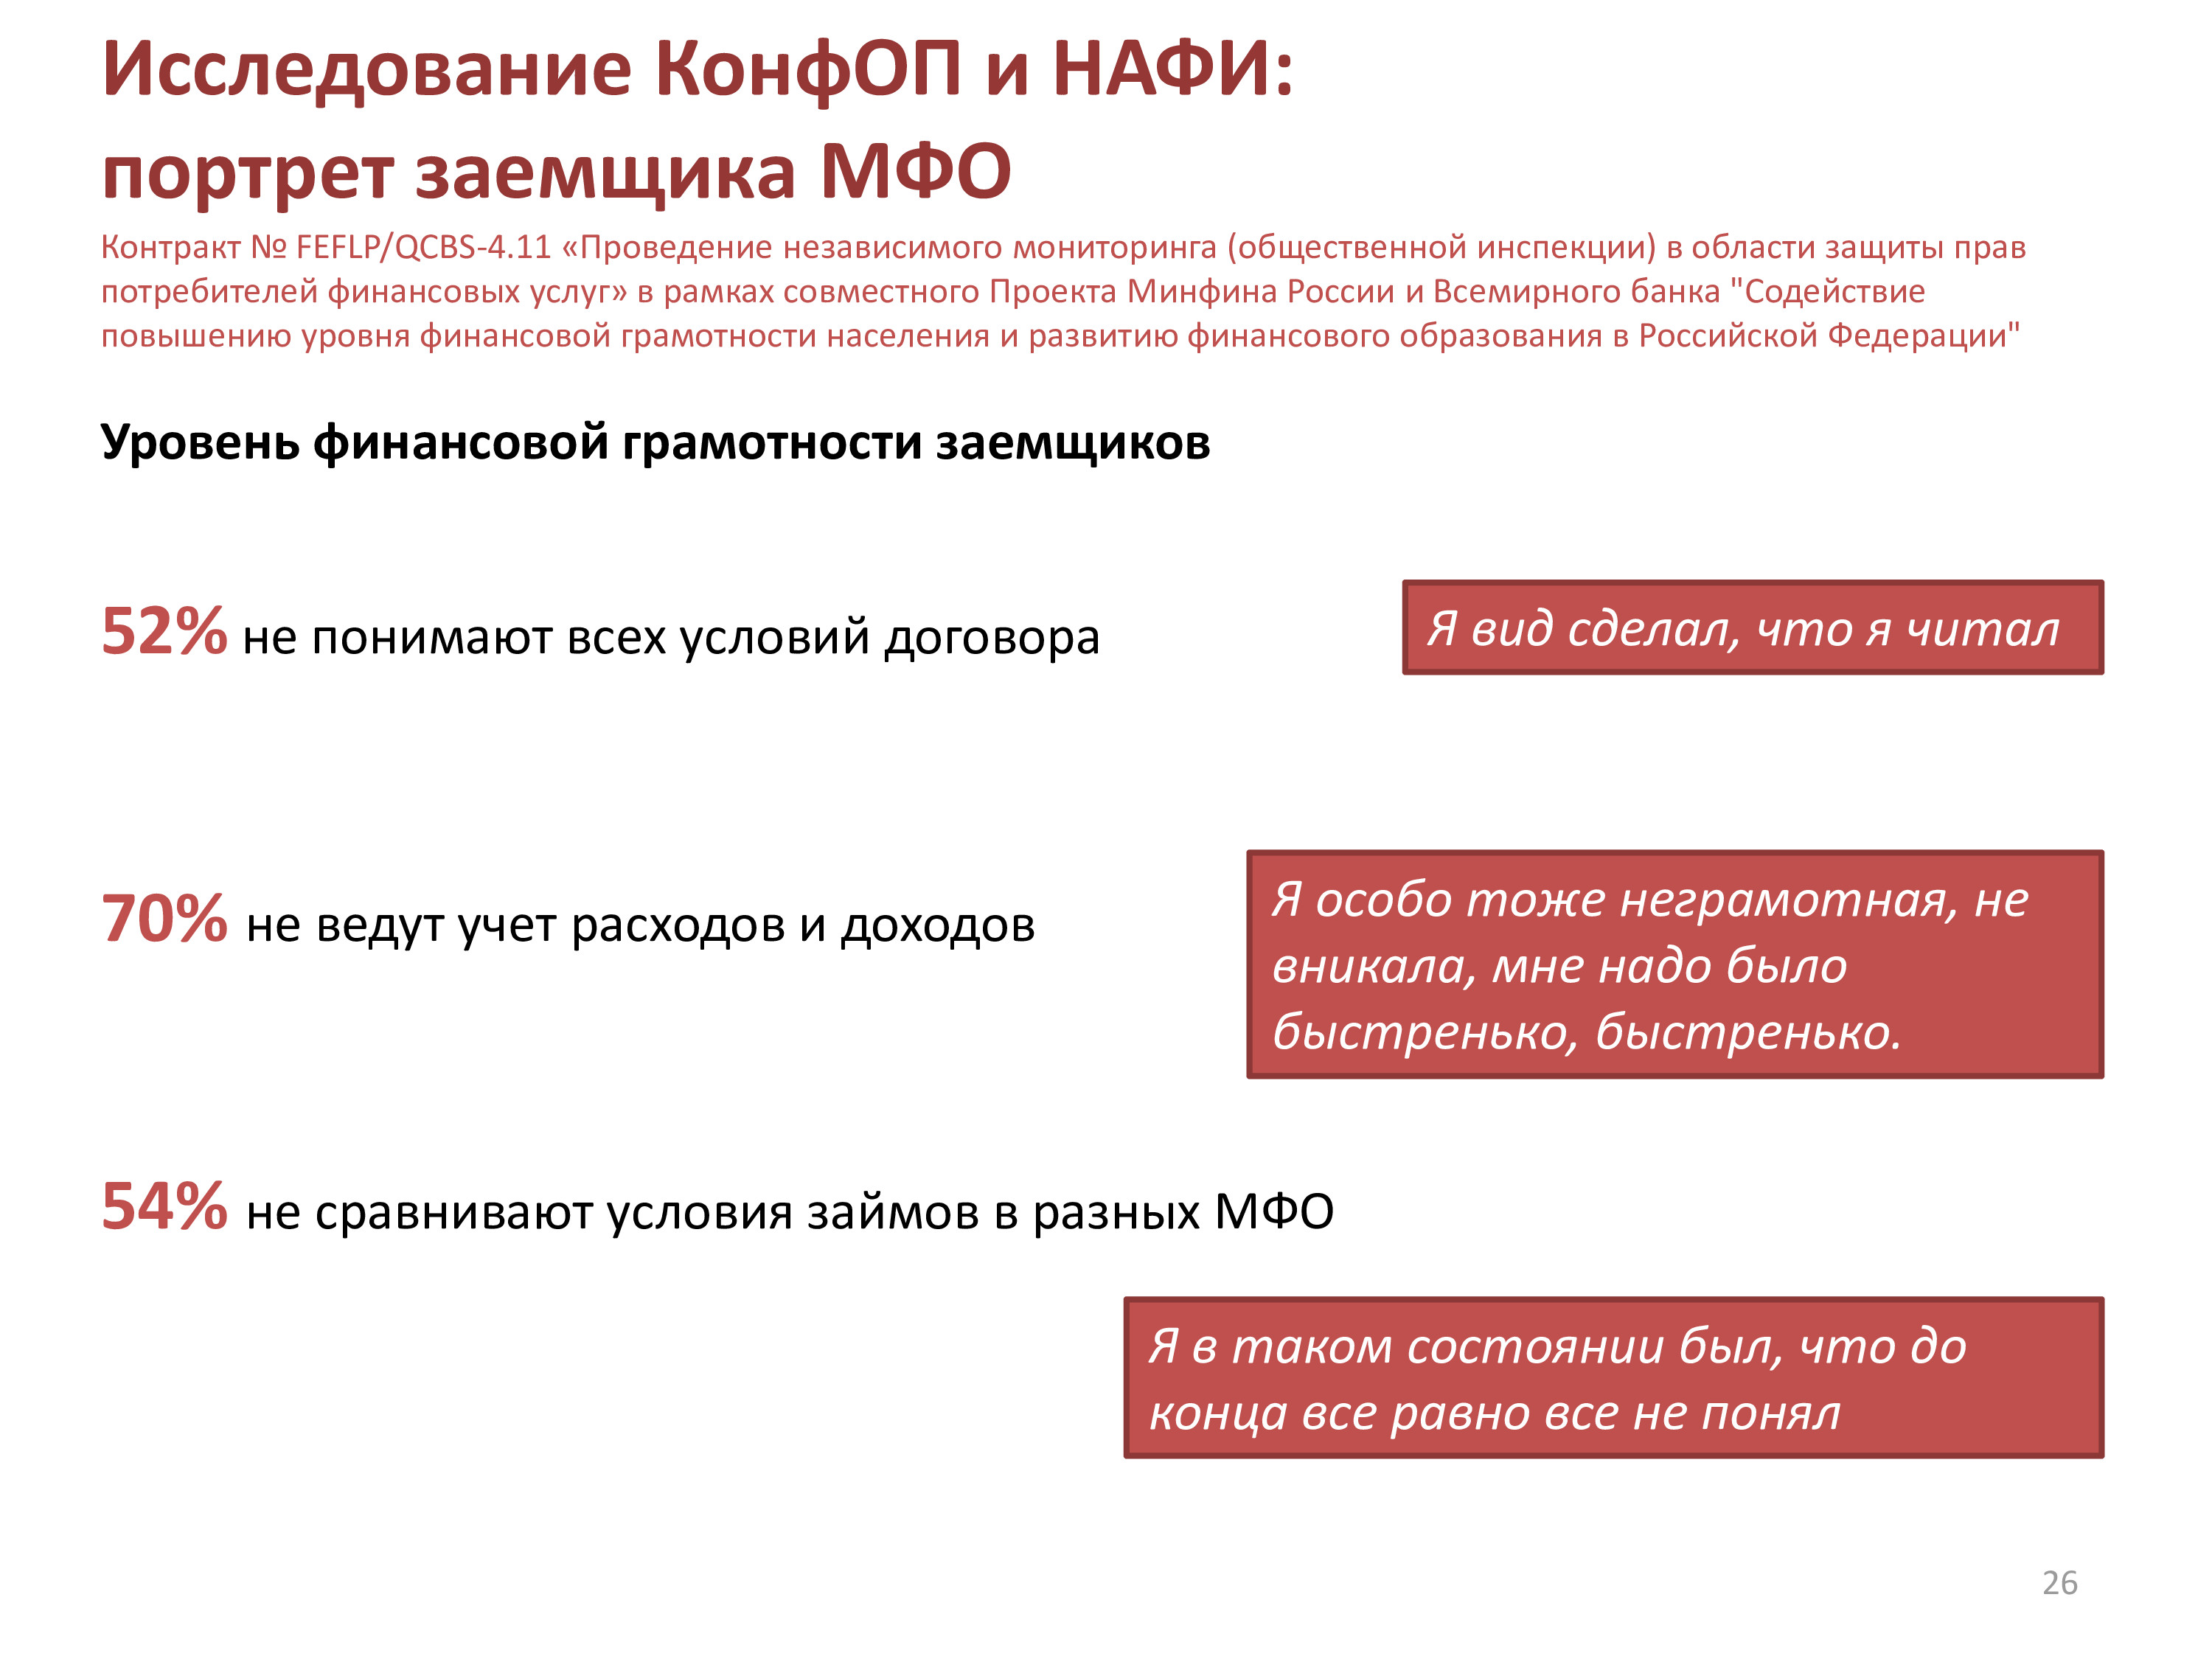 Д.Д. Янин Защита прав потребителей общероссийская ситуация и специфика Юга России pdf.io 2